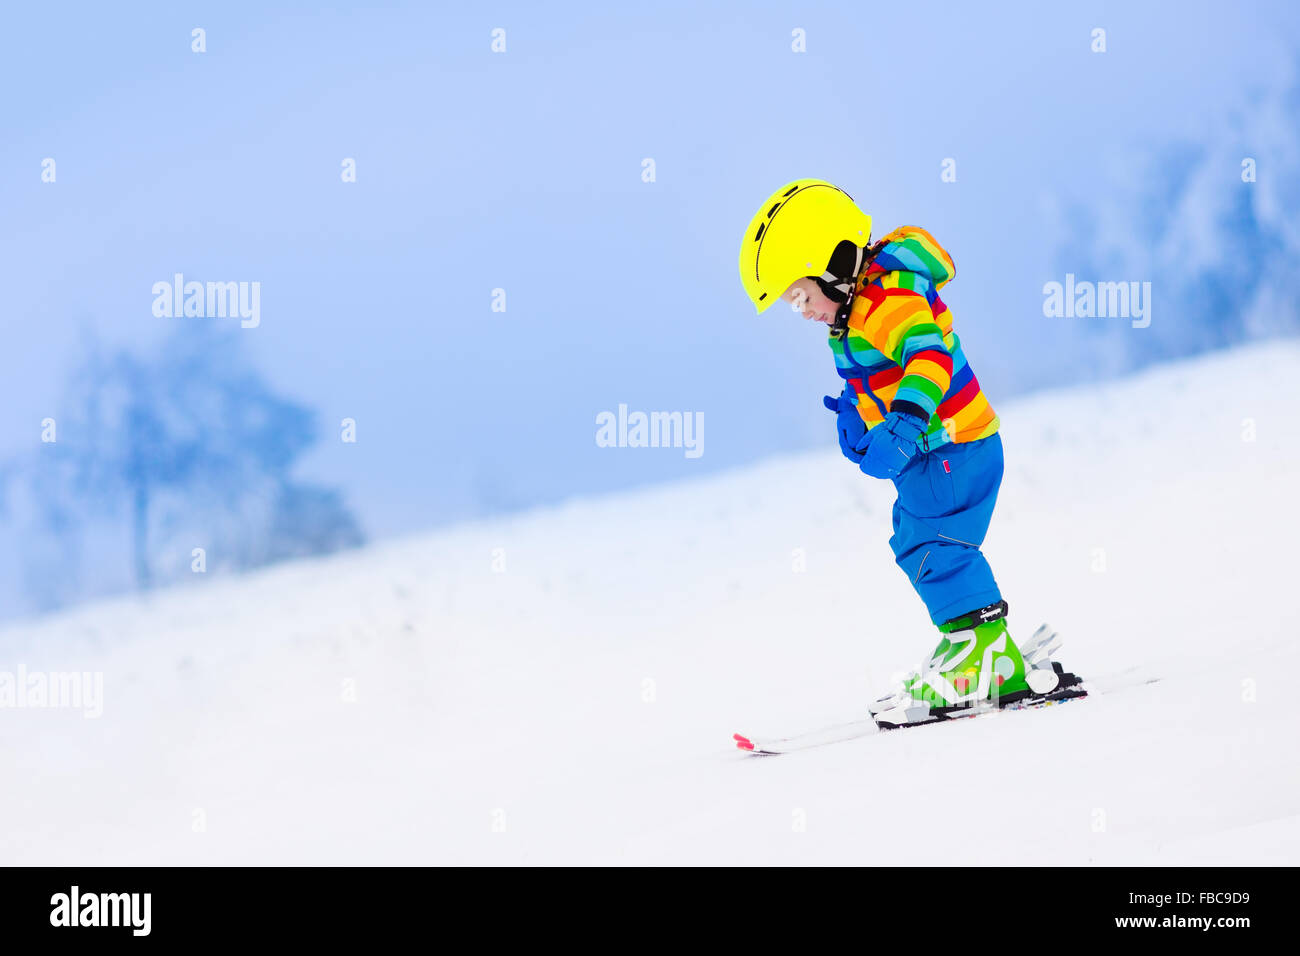 Enfant de ski dans les montagnes. Tout-petit enfant en costume coloré et casque de sécurité l'apprentissage du ski. Sport d'hiver pour la famille Banque D'Images